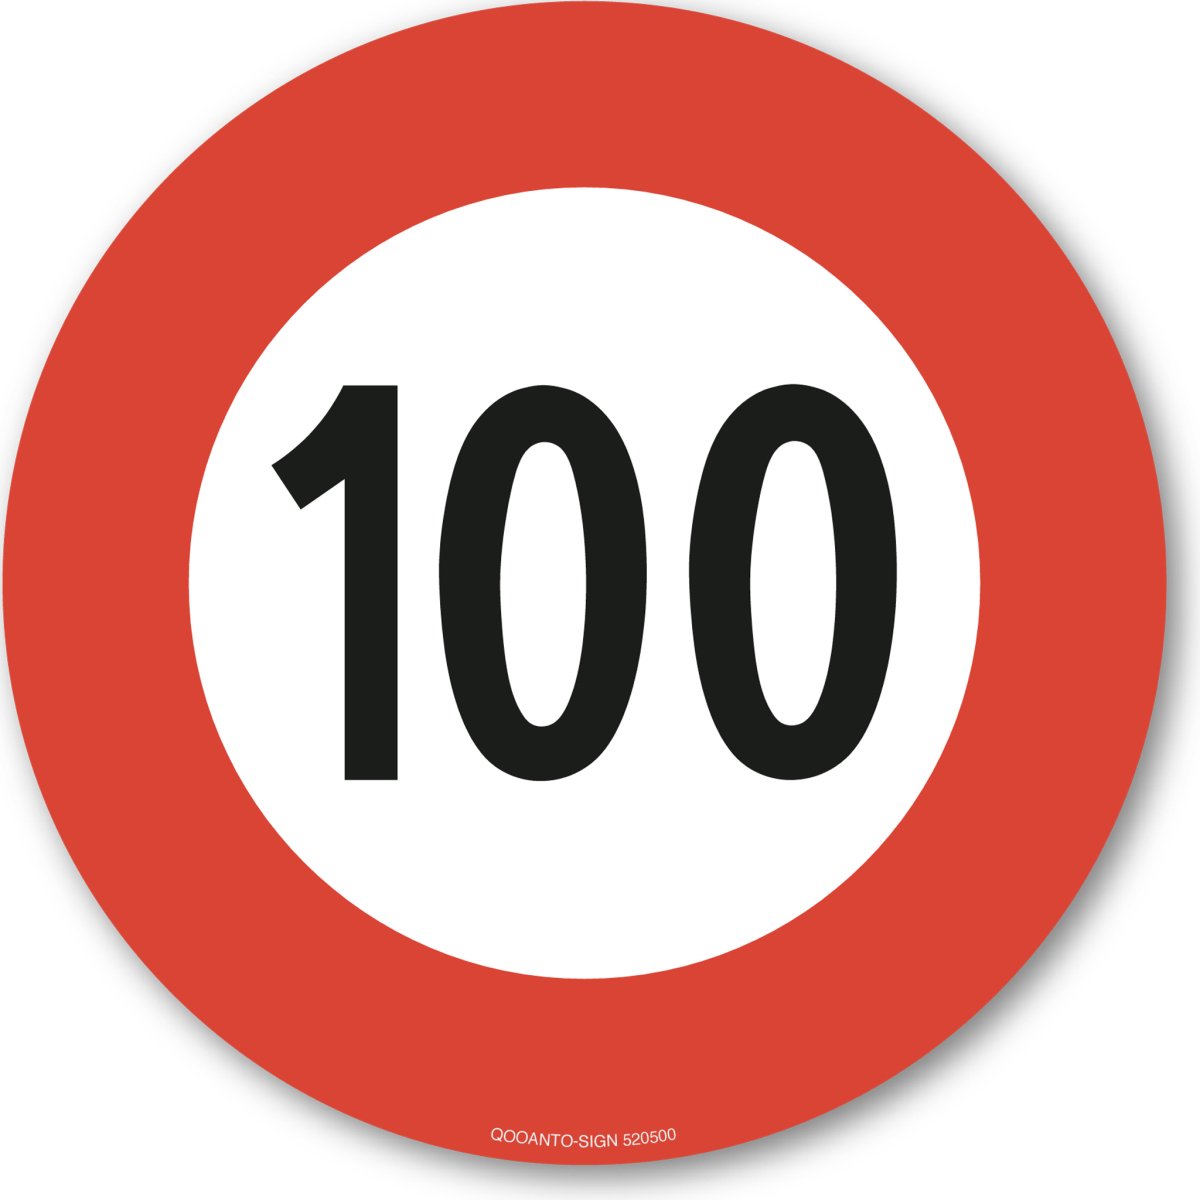 100 Höchstgeschwindigkeit Verkehrsschild oder Aufkleber aus Alu-Verbund oder Selbstklebefolie mit UV-Schutz - QOOANTO-SIGN